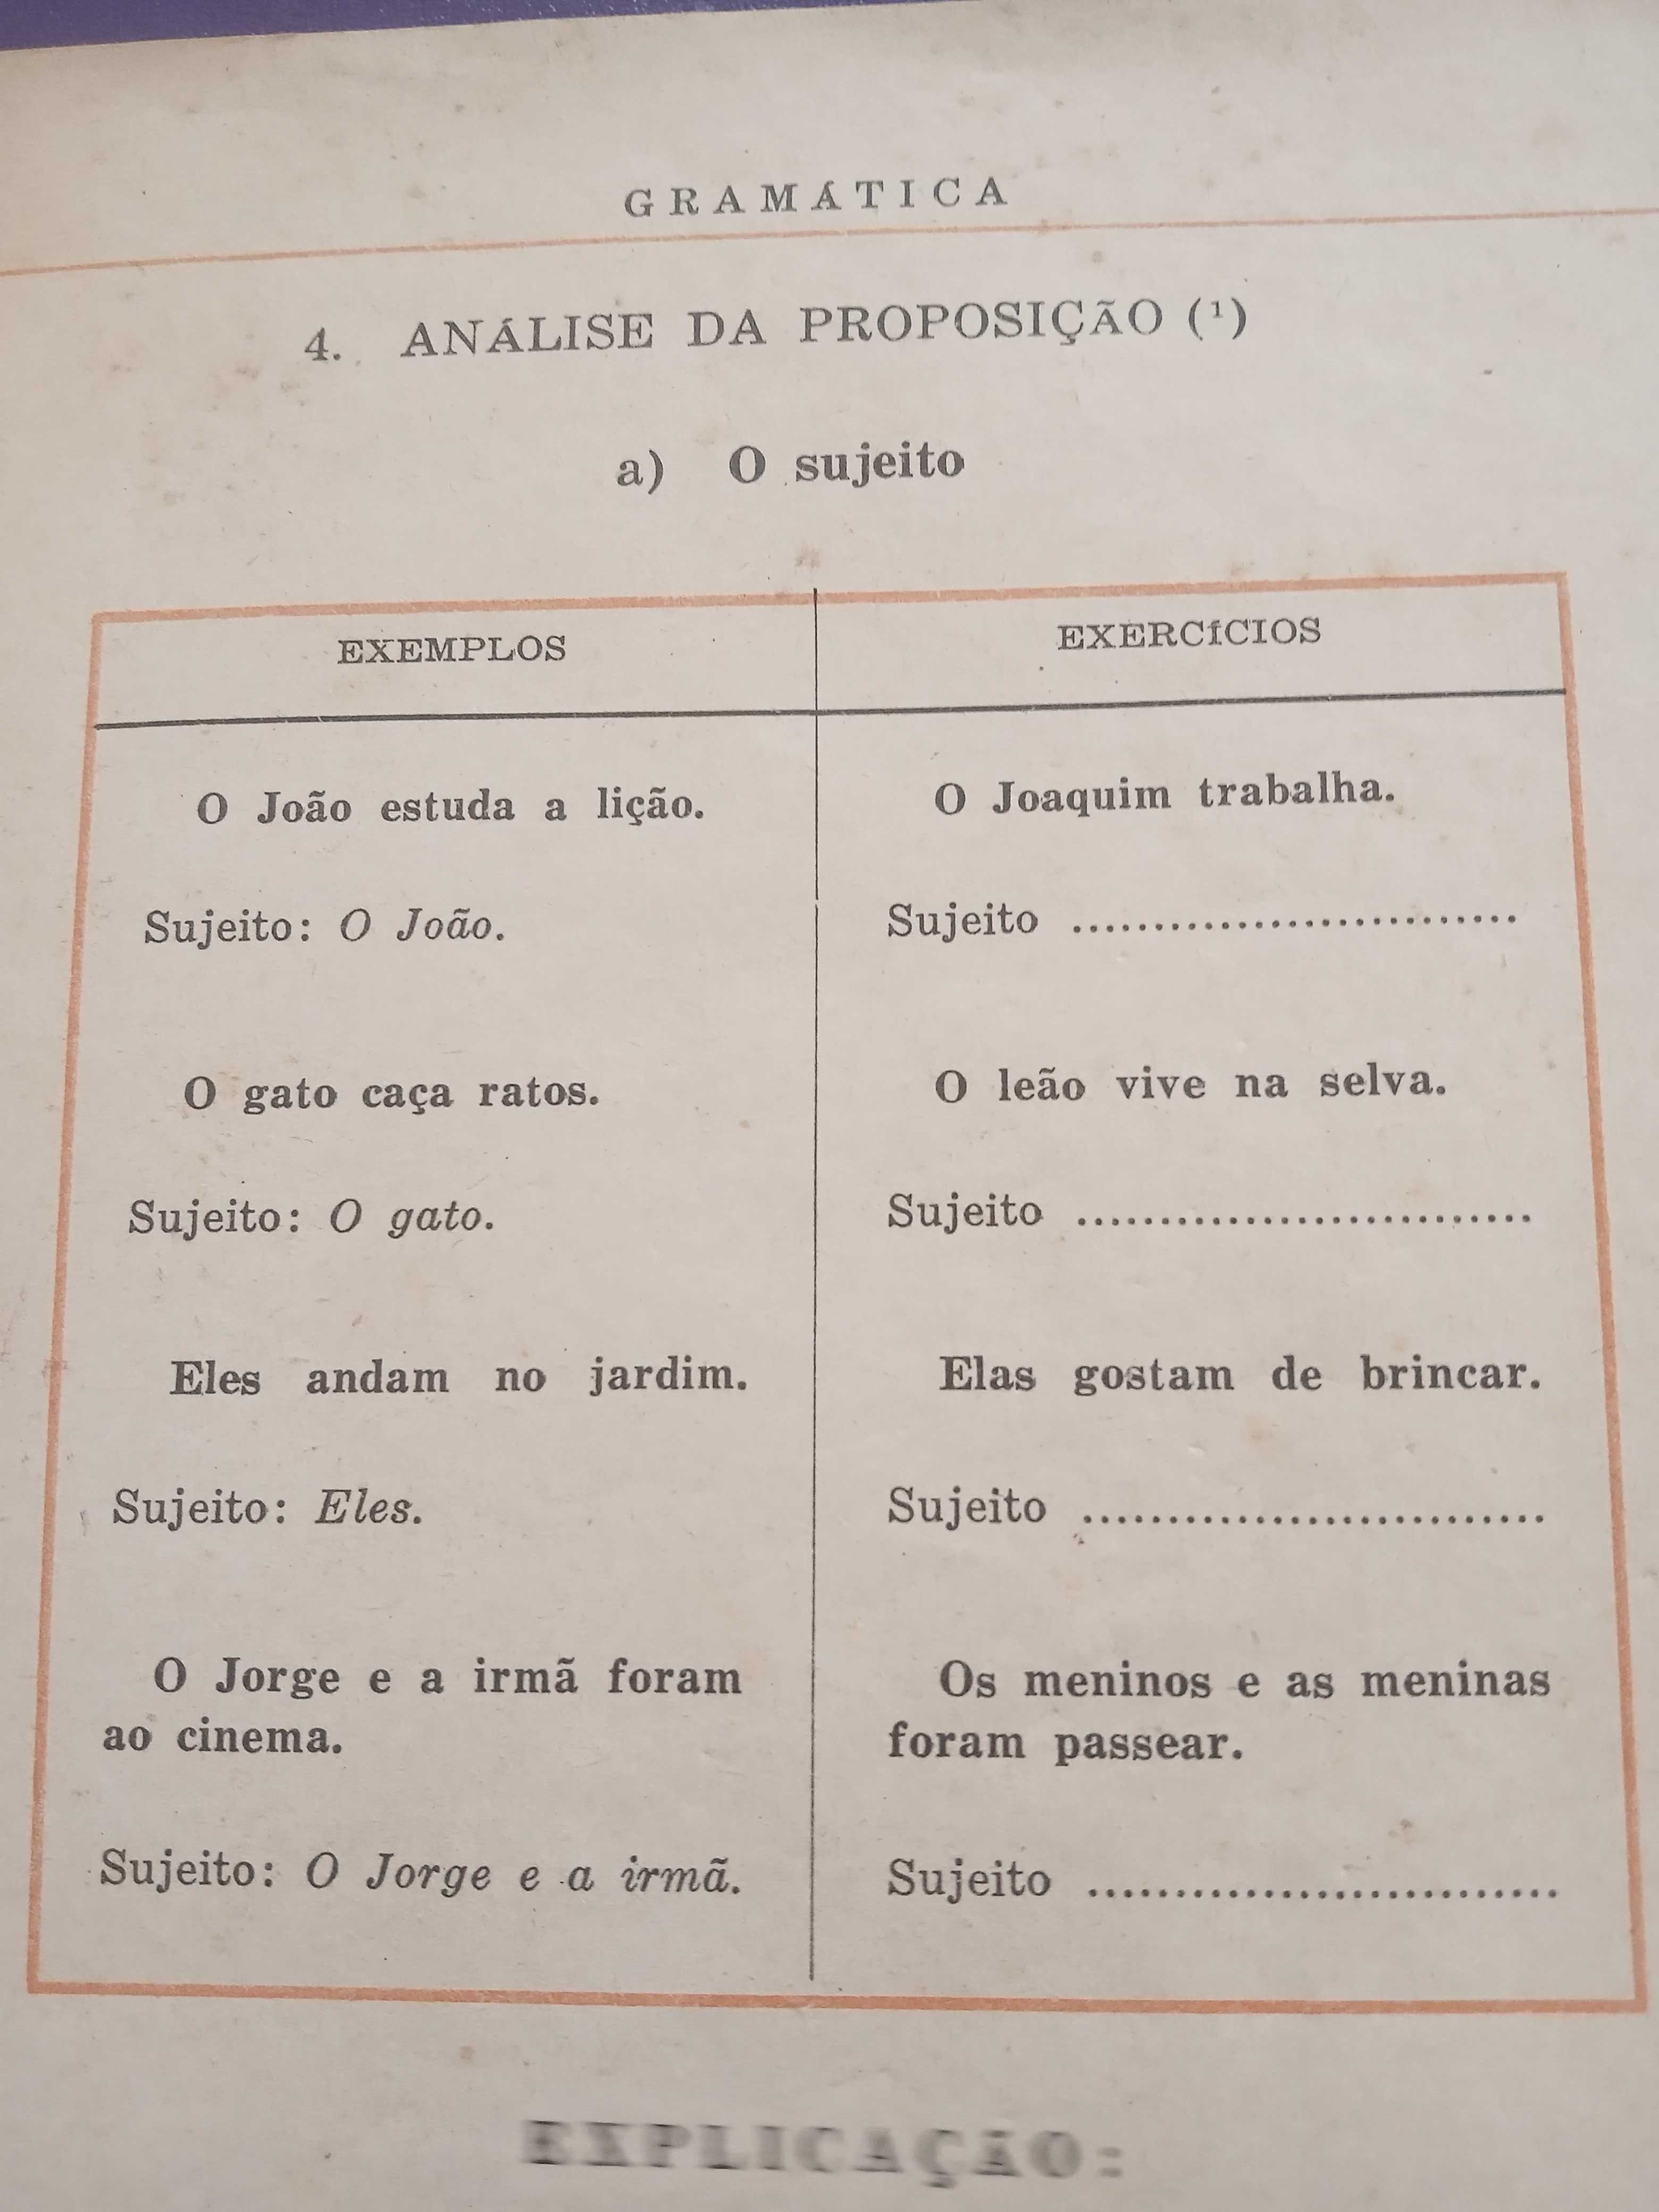 Gramática de Português 1974 - Pedro de Carvalho